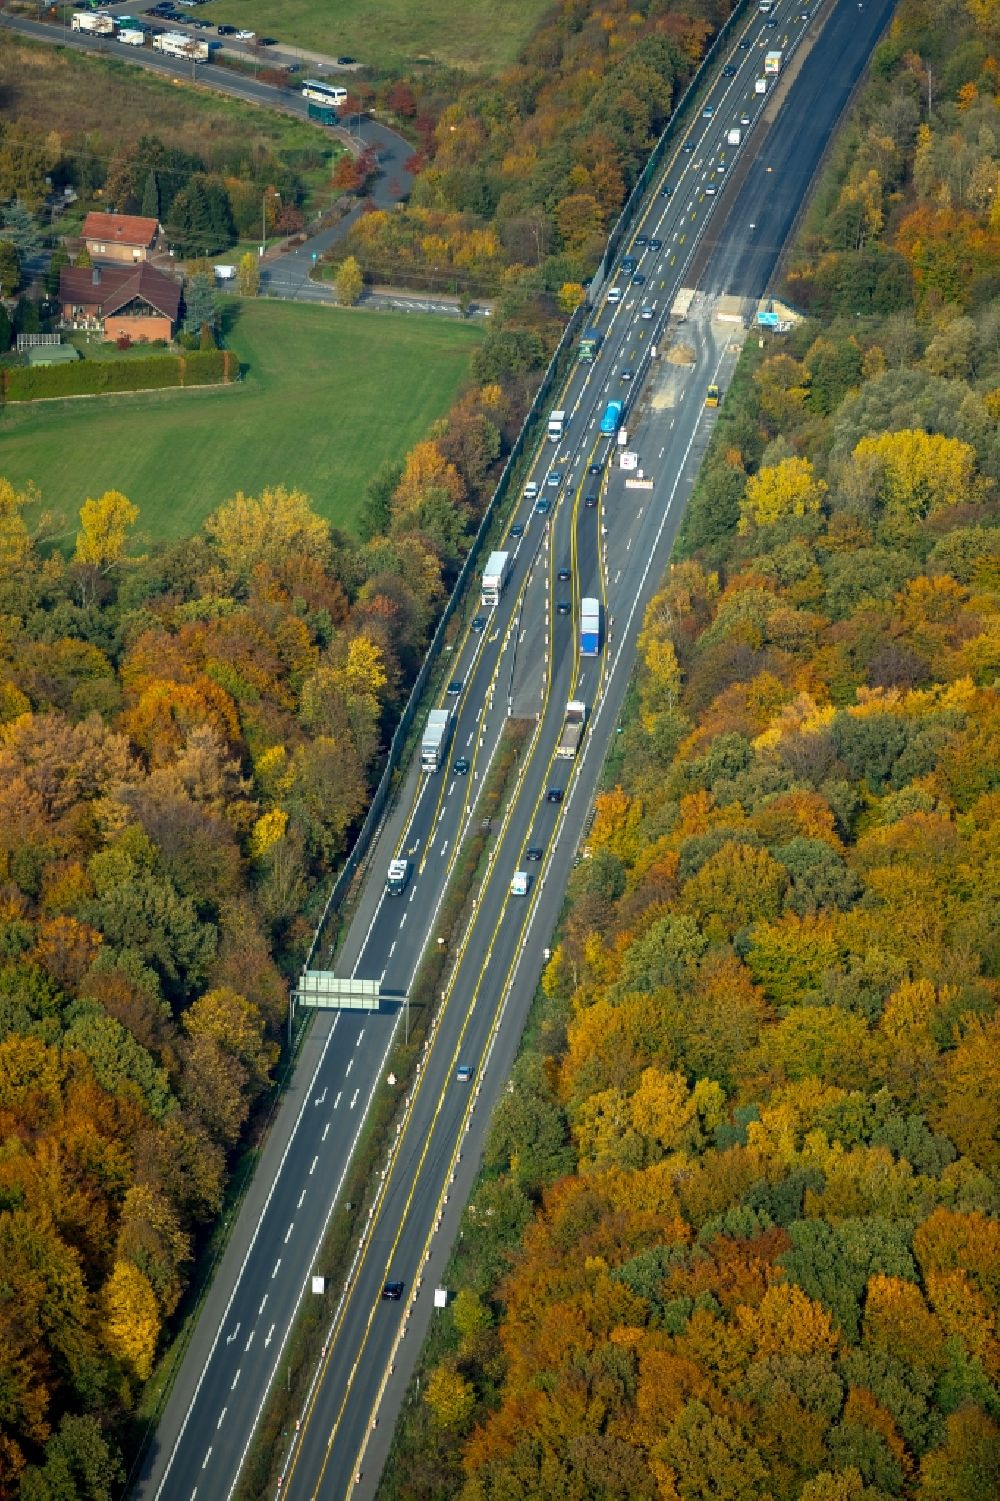 Gladbeck aus der Vogelperspektive: Herbstluftbild Baustelle am Autobahn- Streckenverlauf der BAB A2 in Gladbeck im Bundesland Nordrhein-Westfalen, Deutschland